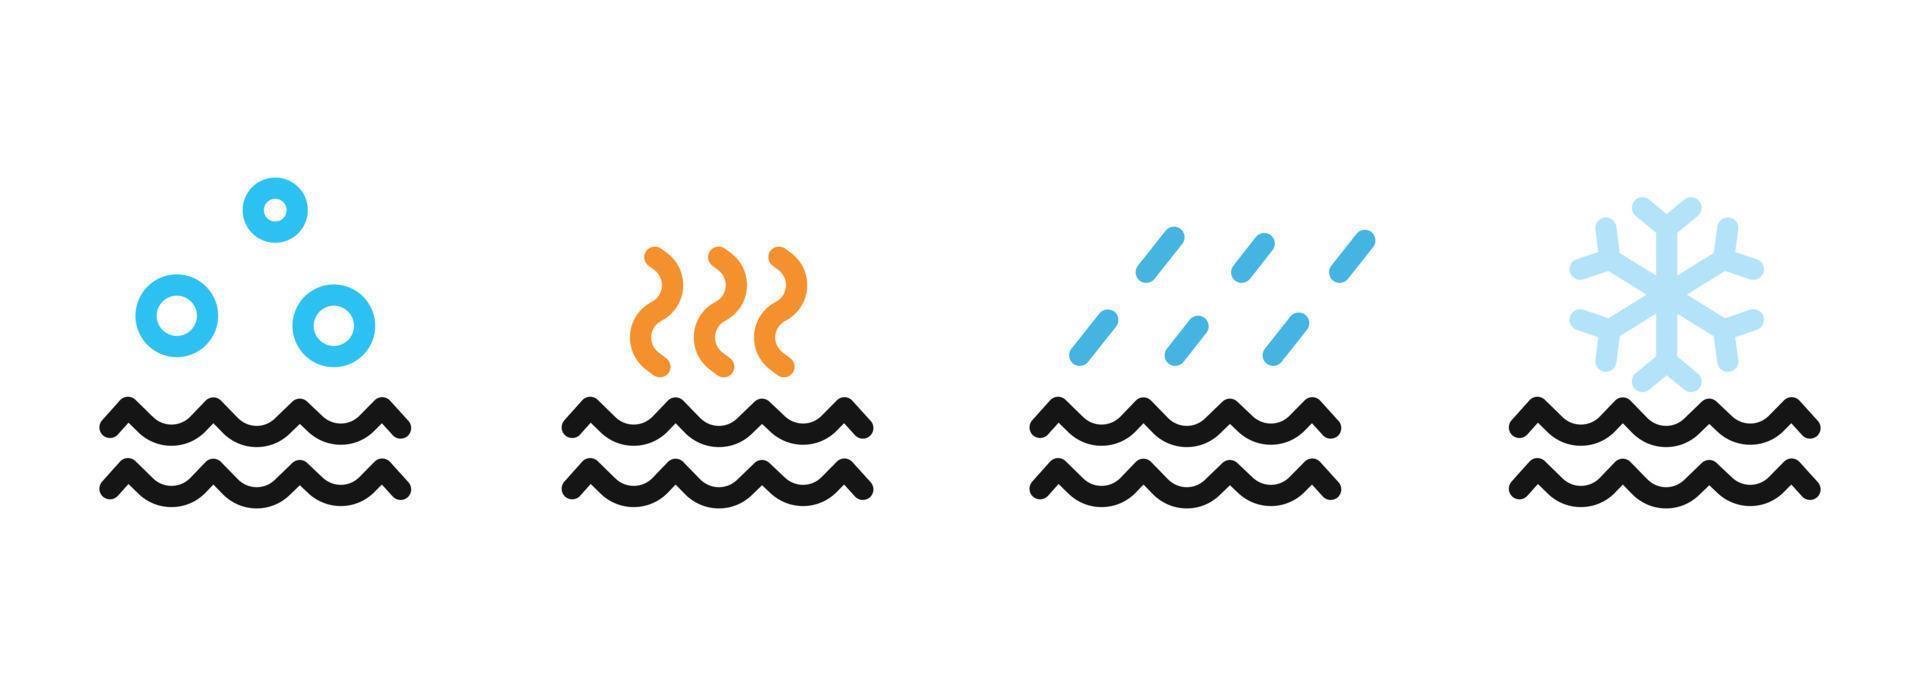 ensemble de diverses conceptions d'icônes d'eau. symbole météorologique simple pour l'élément de conception vecteur